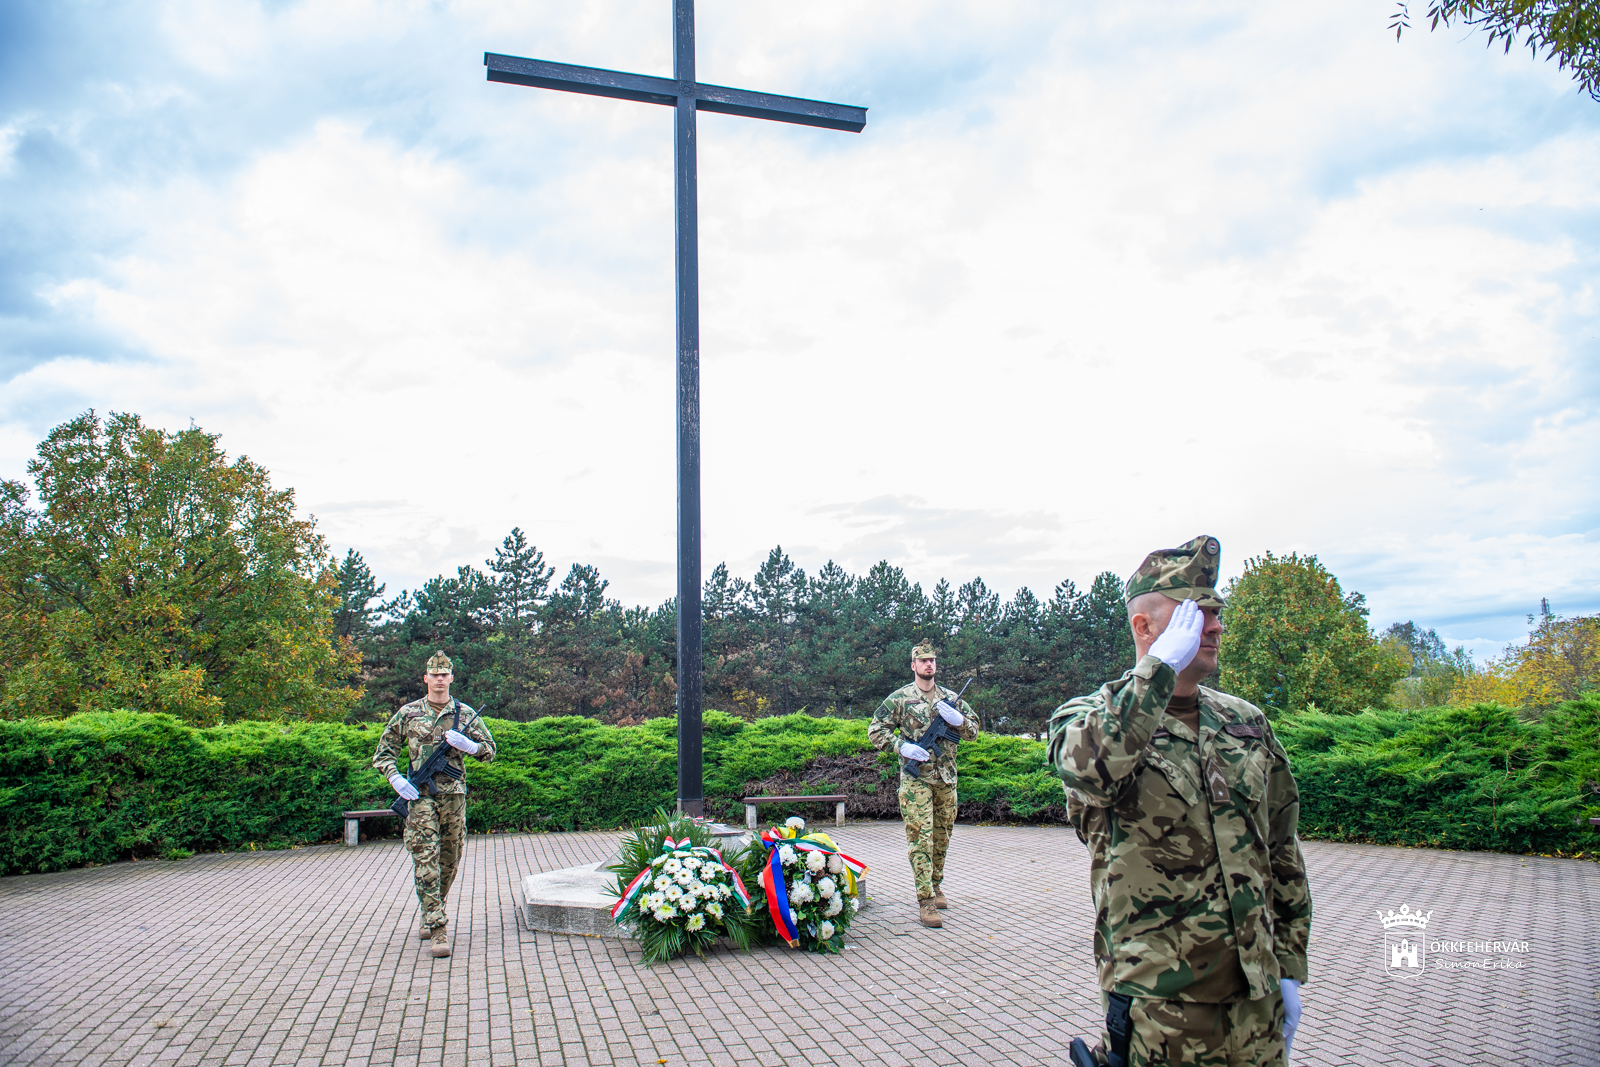 Néma koszorúzással emlékeztek halottak napja alkalmából az elhunyt katonák emléke előtt